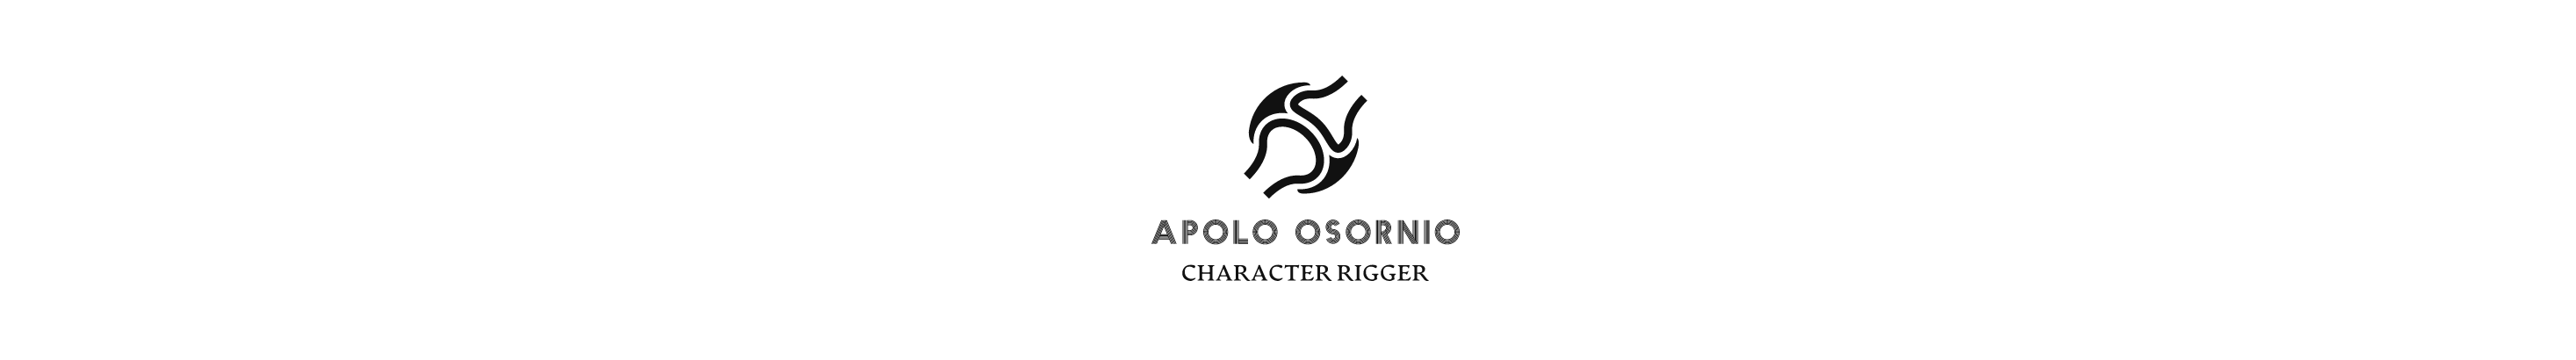 Apolo Osornio's profile banner